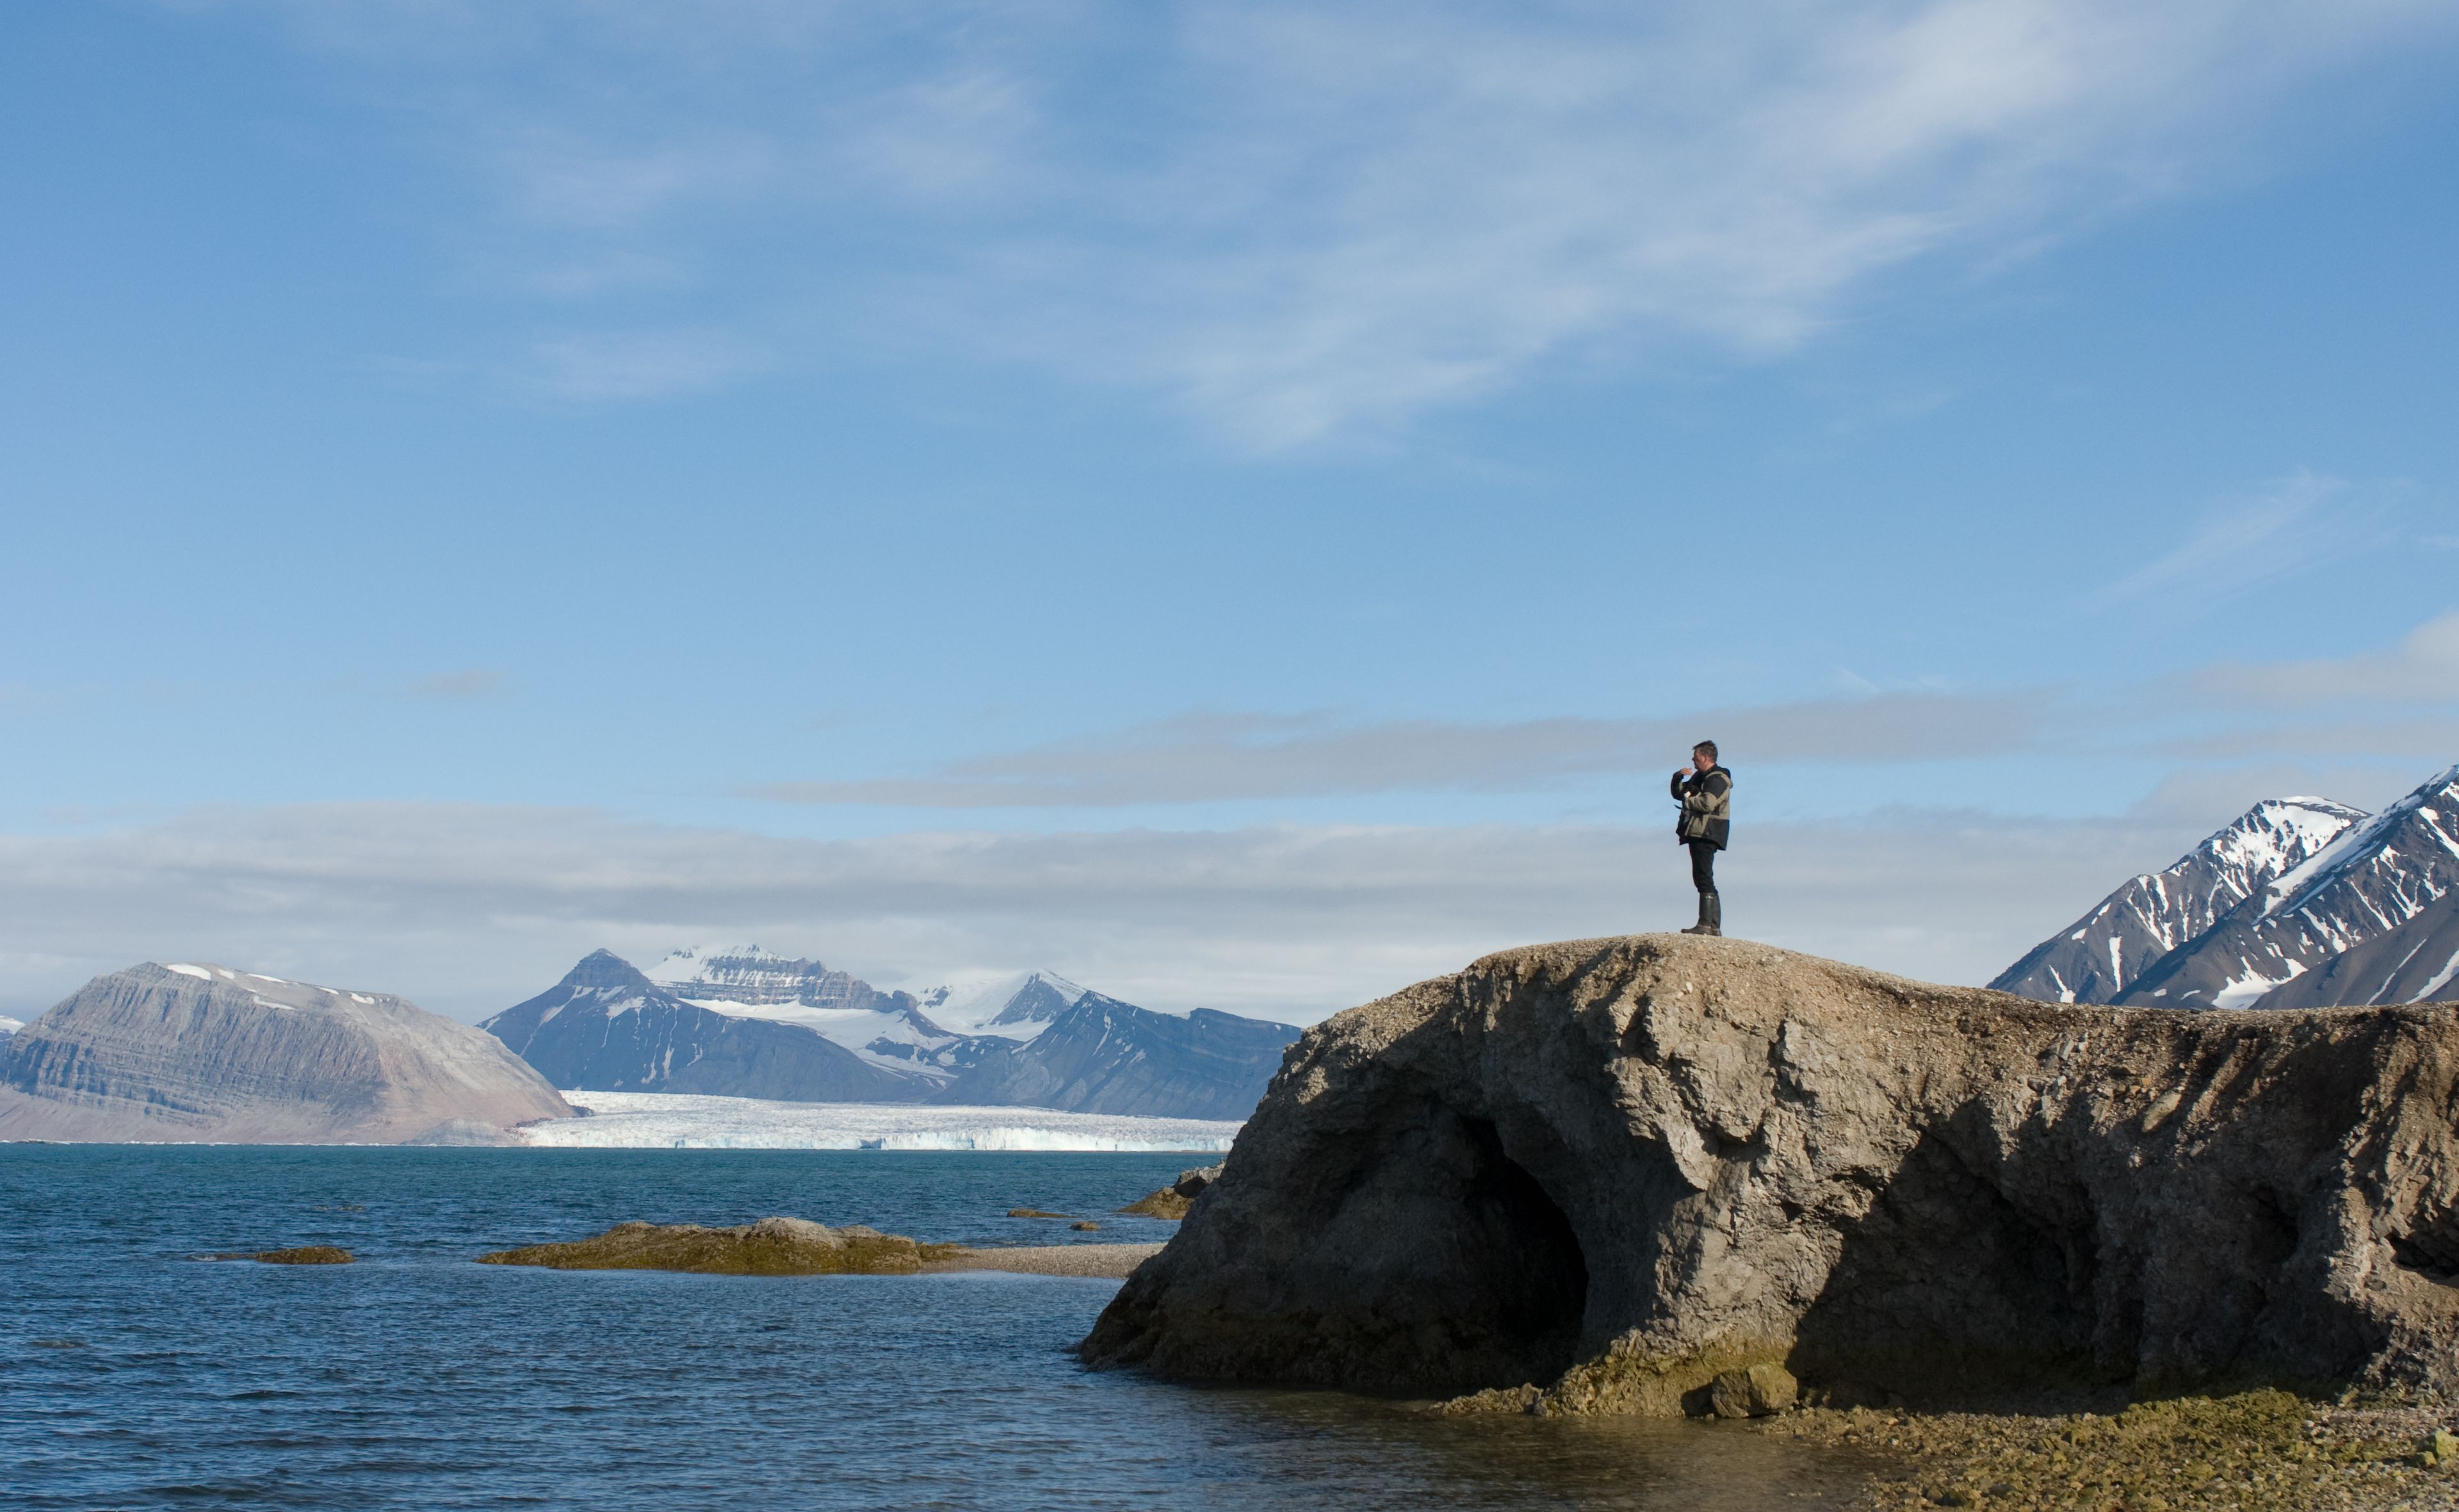 Maarten Loonen on Spitsbergen (Photo: Ronald Visser)